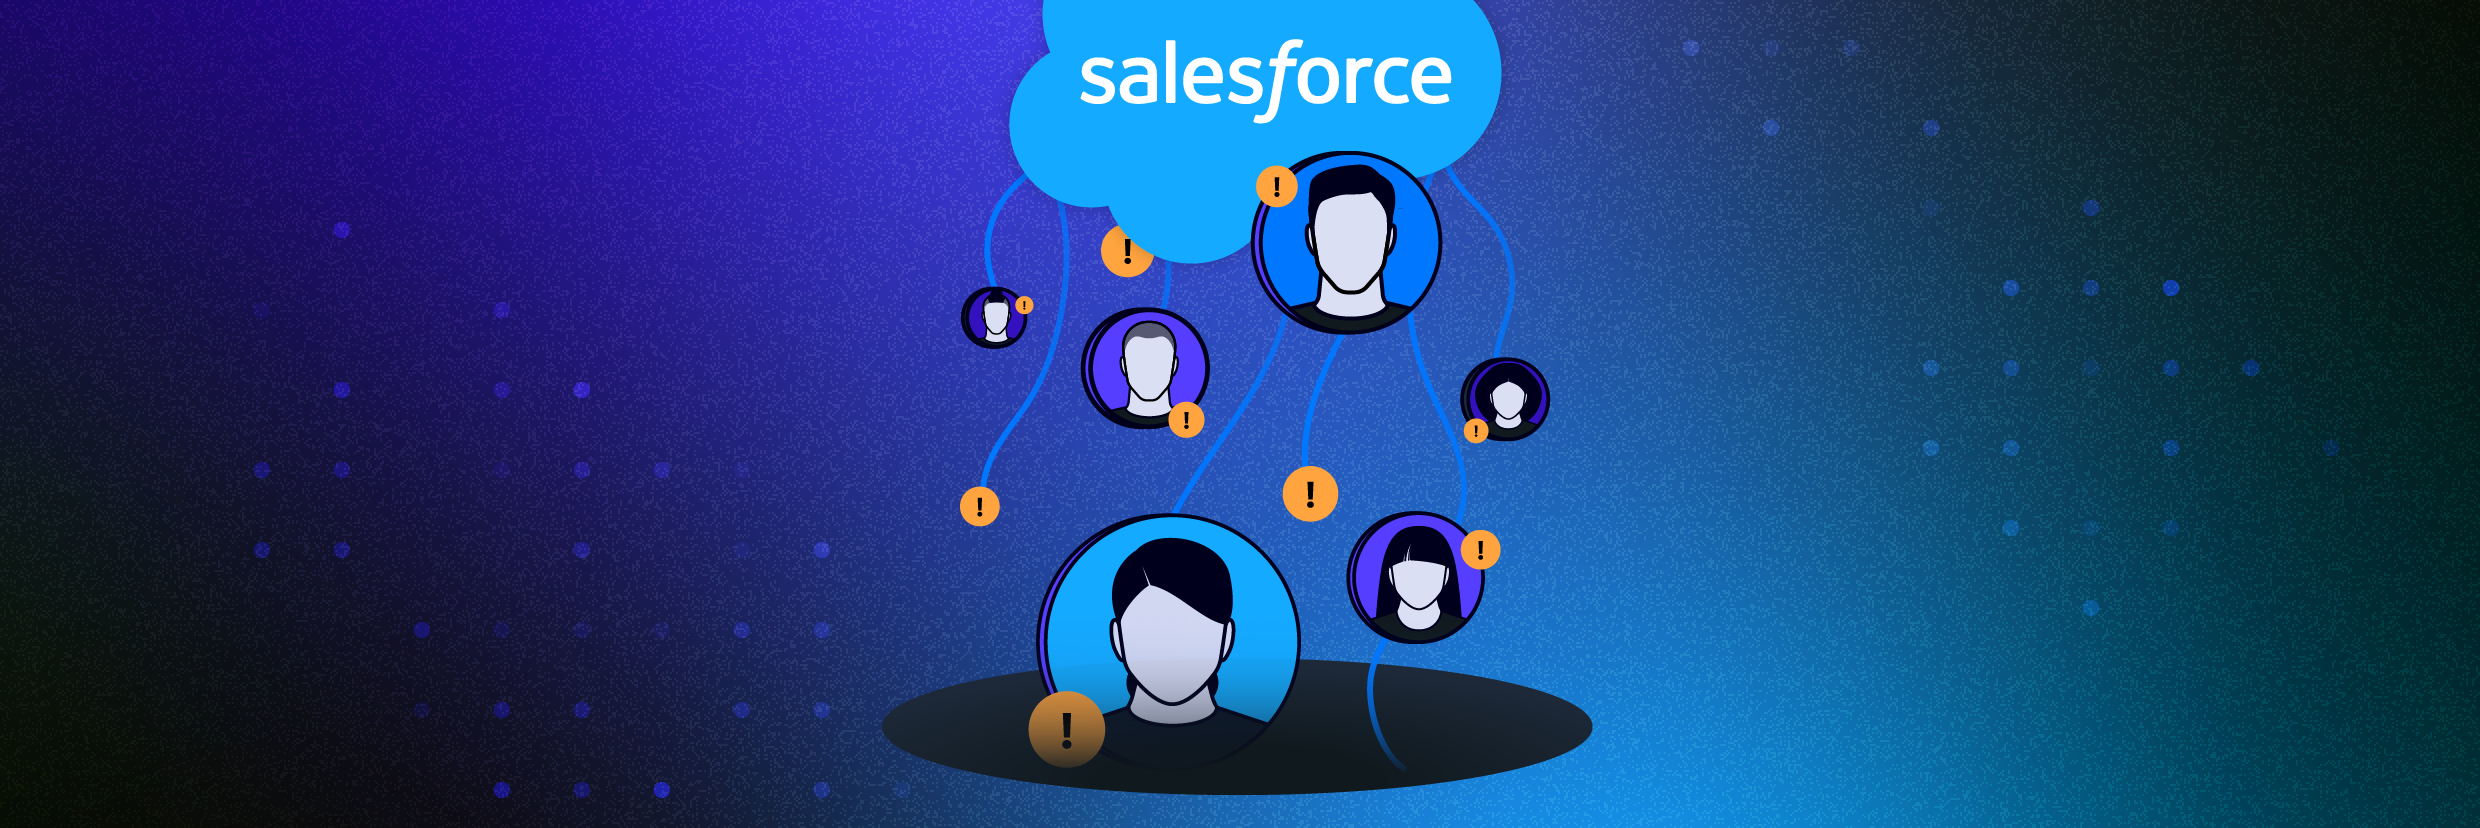 Salesforce-Logo mit Benutzern, die nach oben schweben – als Darstellung zu vieler gemeinsamer Berechtigungen und Profilzugriffe